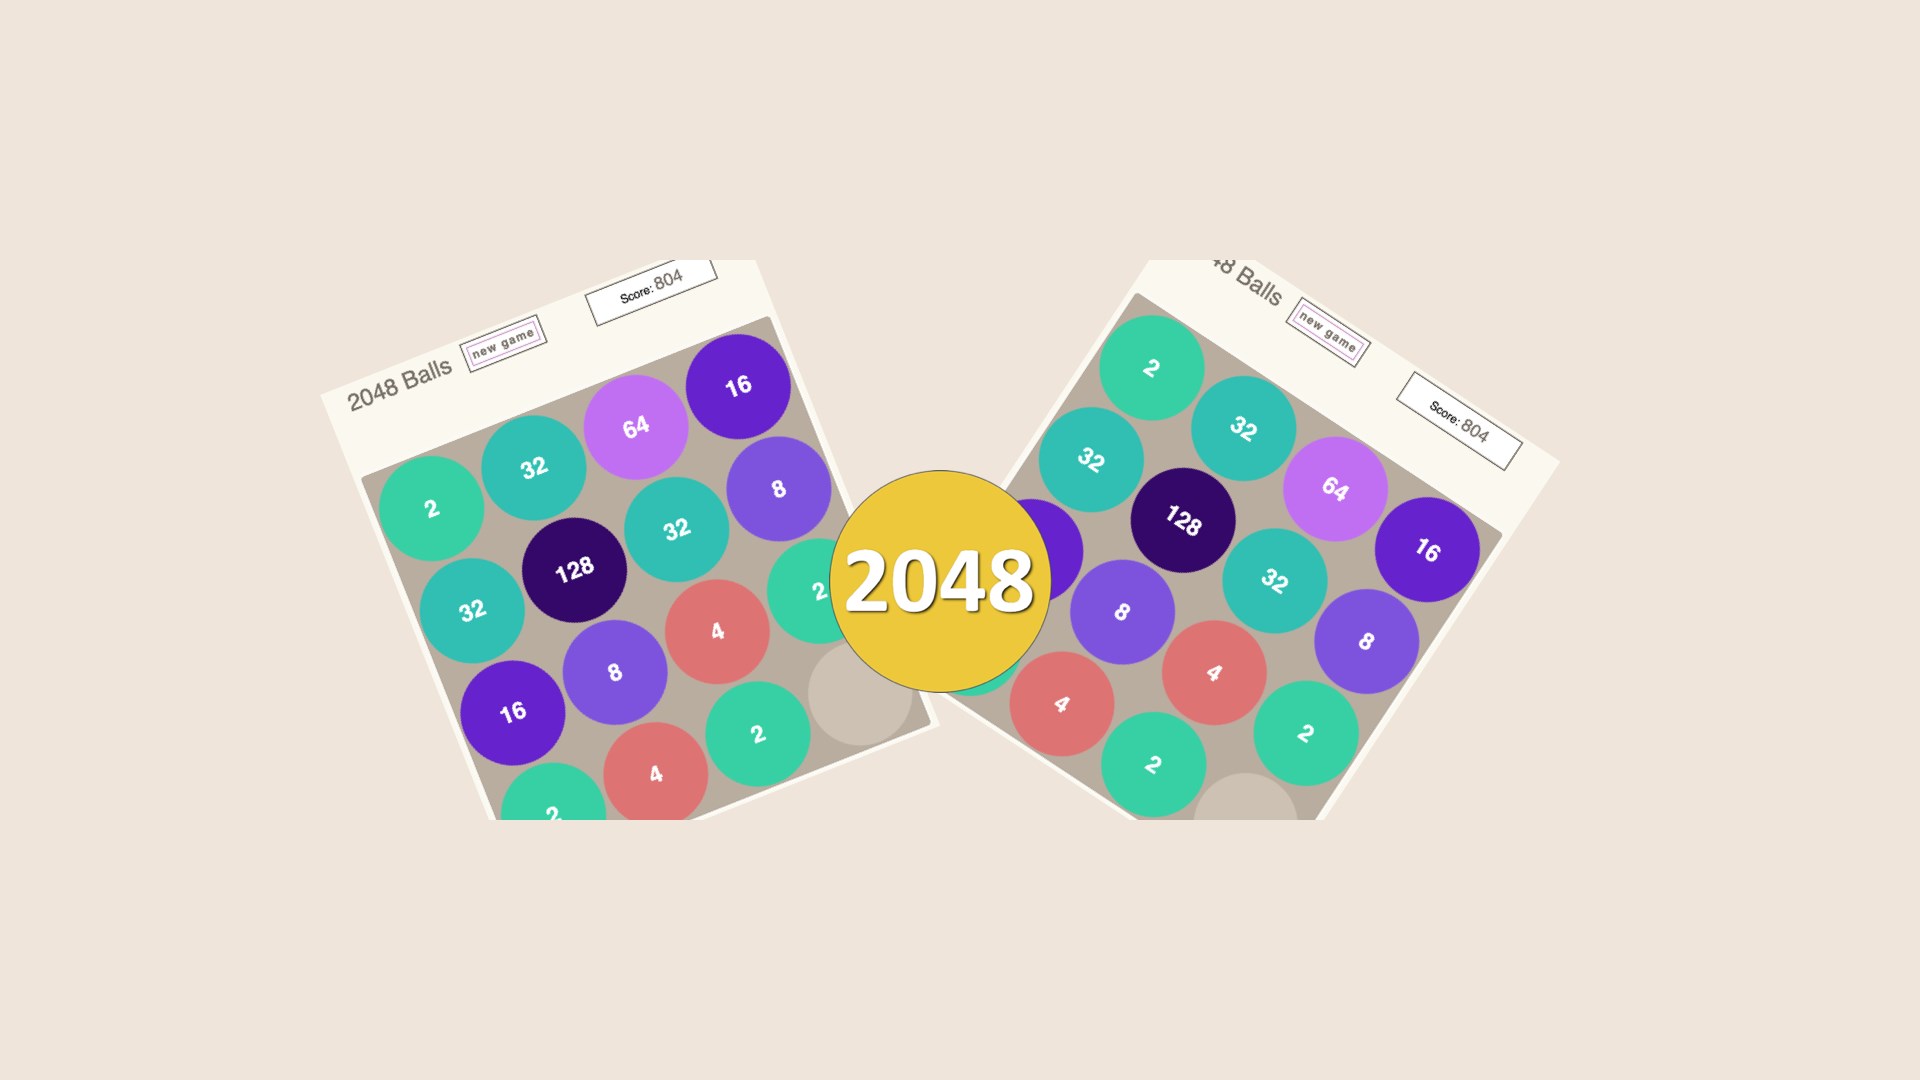 Play 2048 Merge, 100% Free Online Game